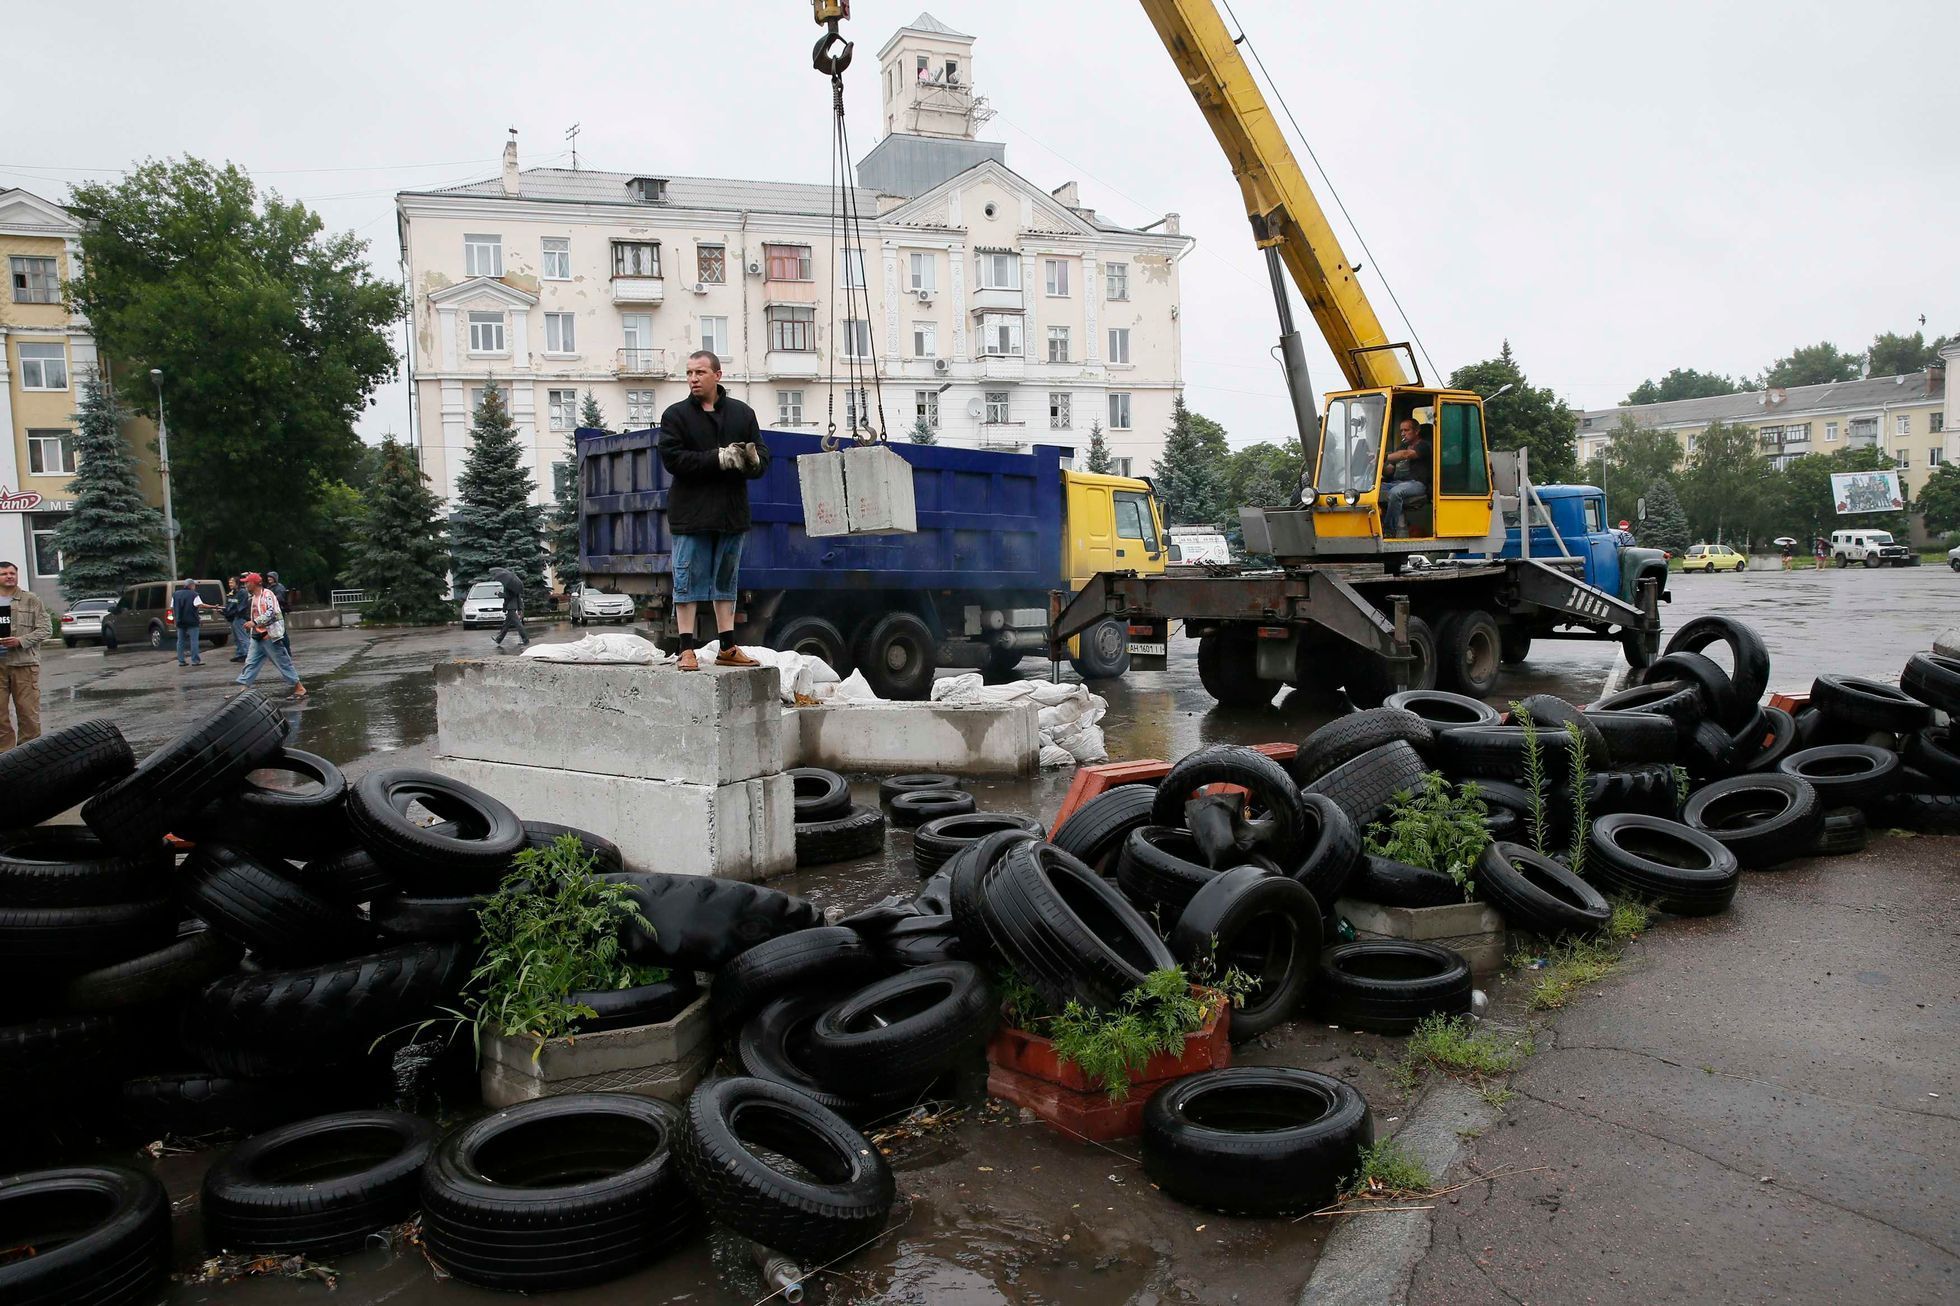 Ukrajina - Kramatorsk - rozebírání barikád